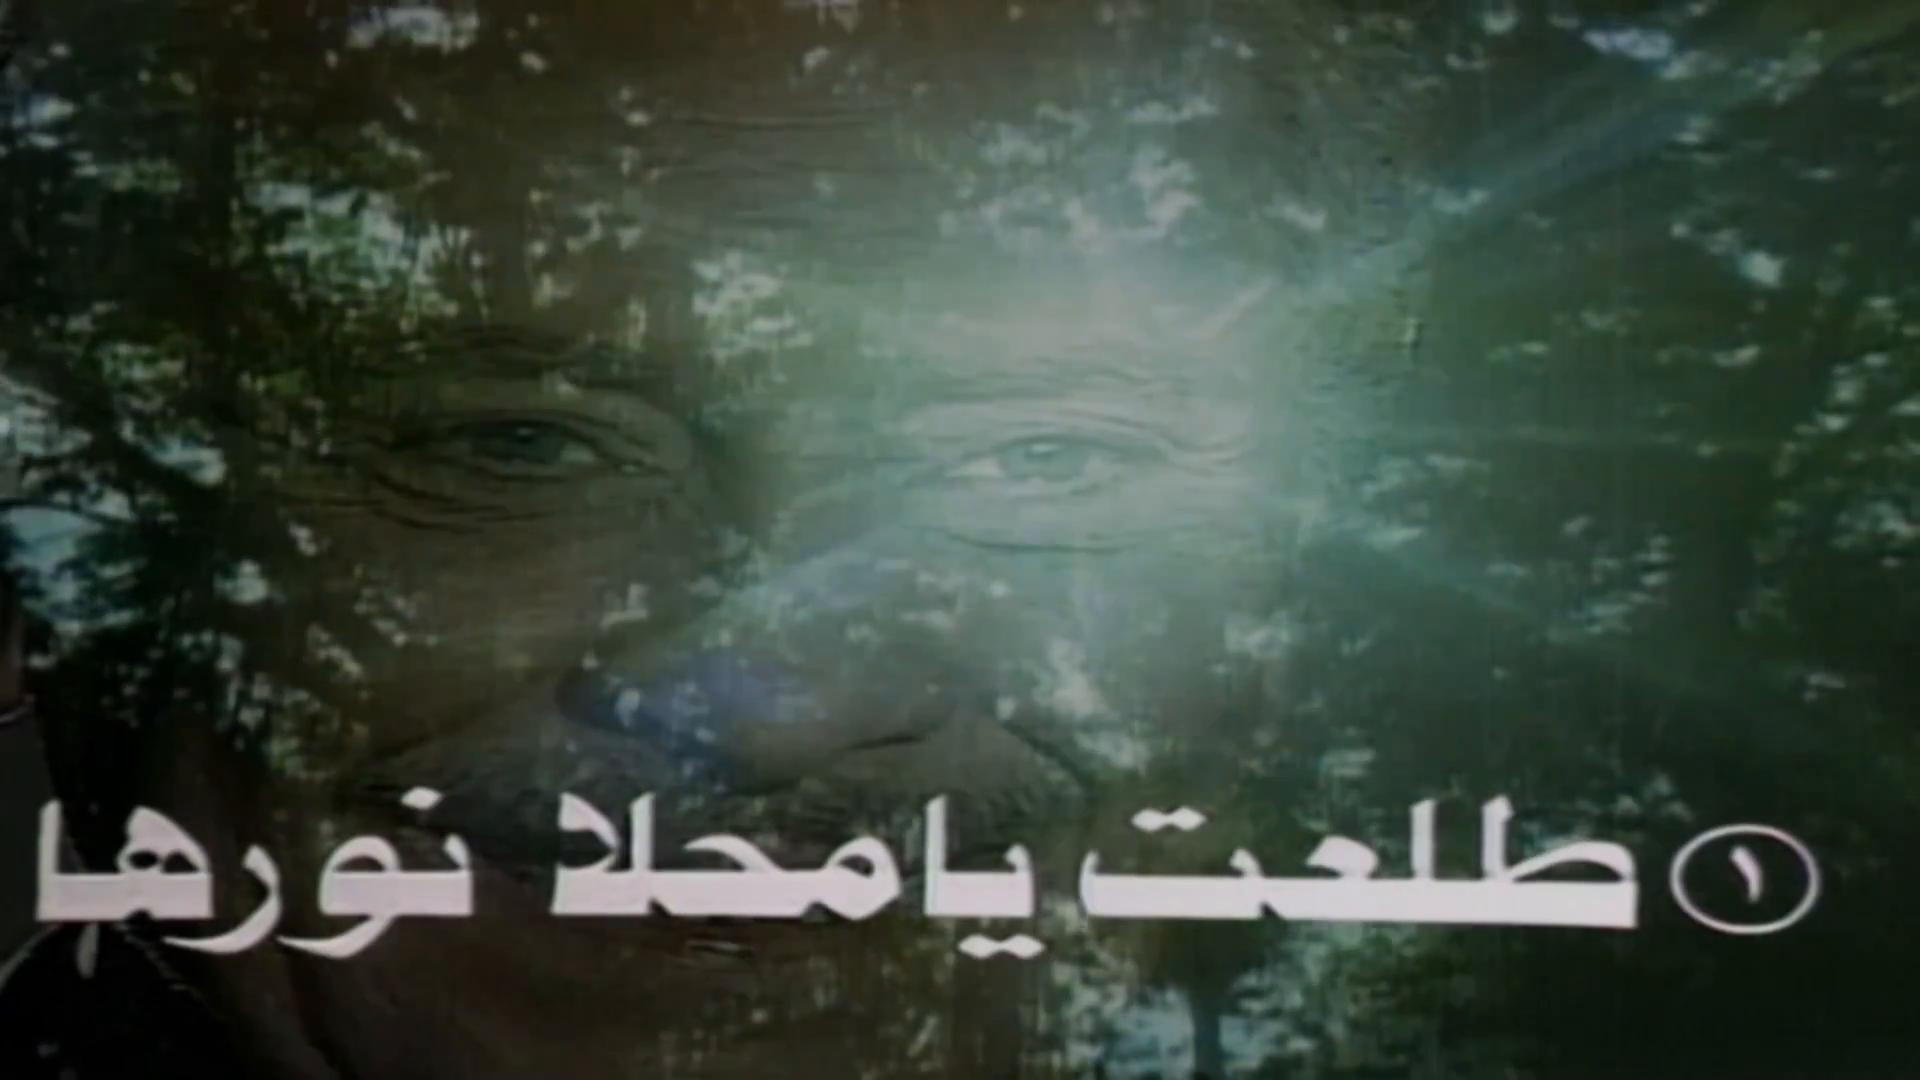 المسلسل المصري رحلة السيد أبو العلا البشري [1986][WEB DL][1080p] تحميل مباشر MFddtDoh_o